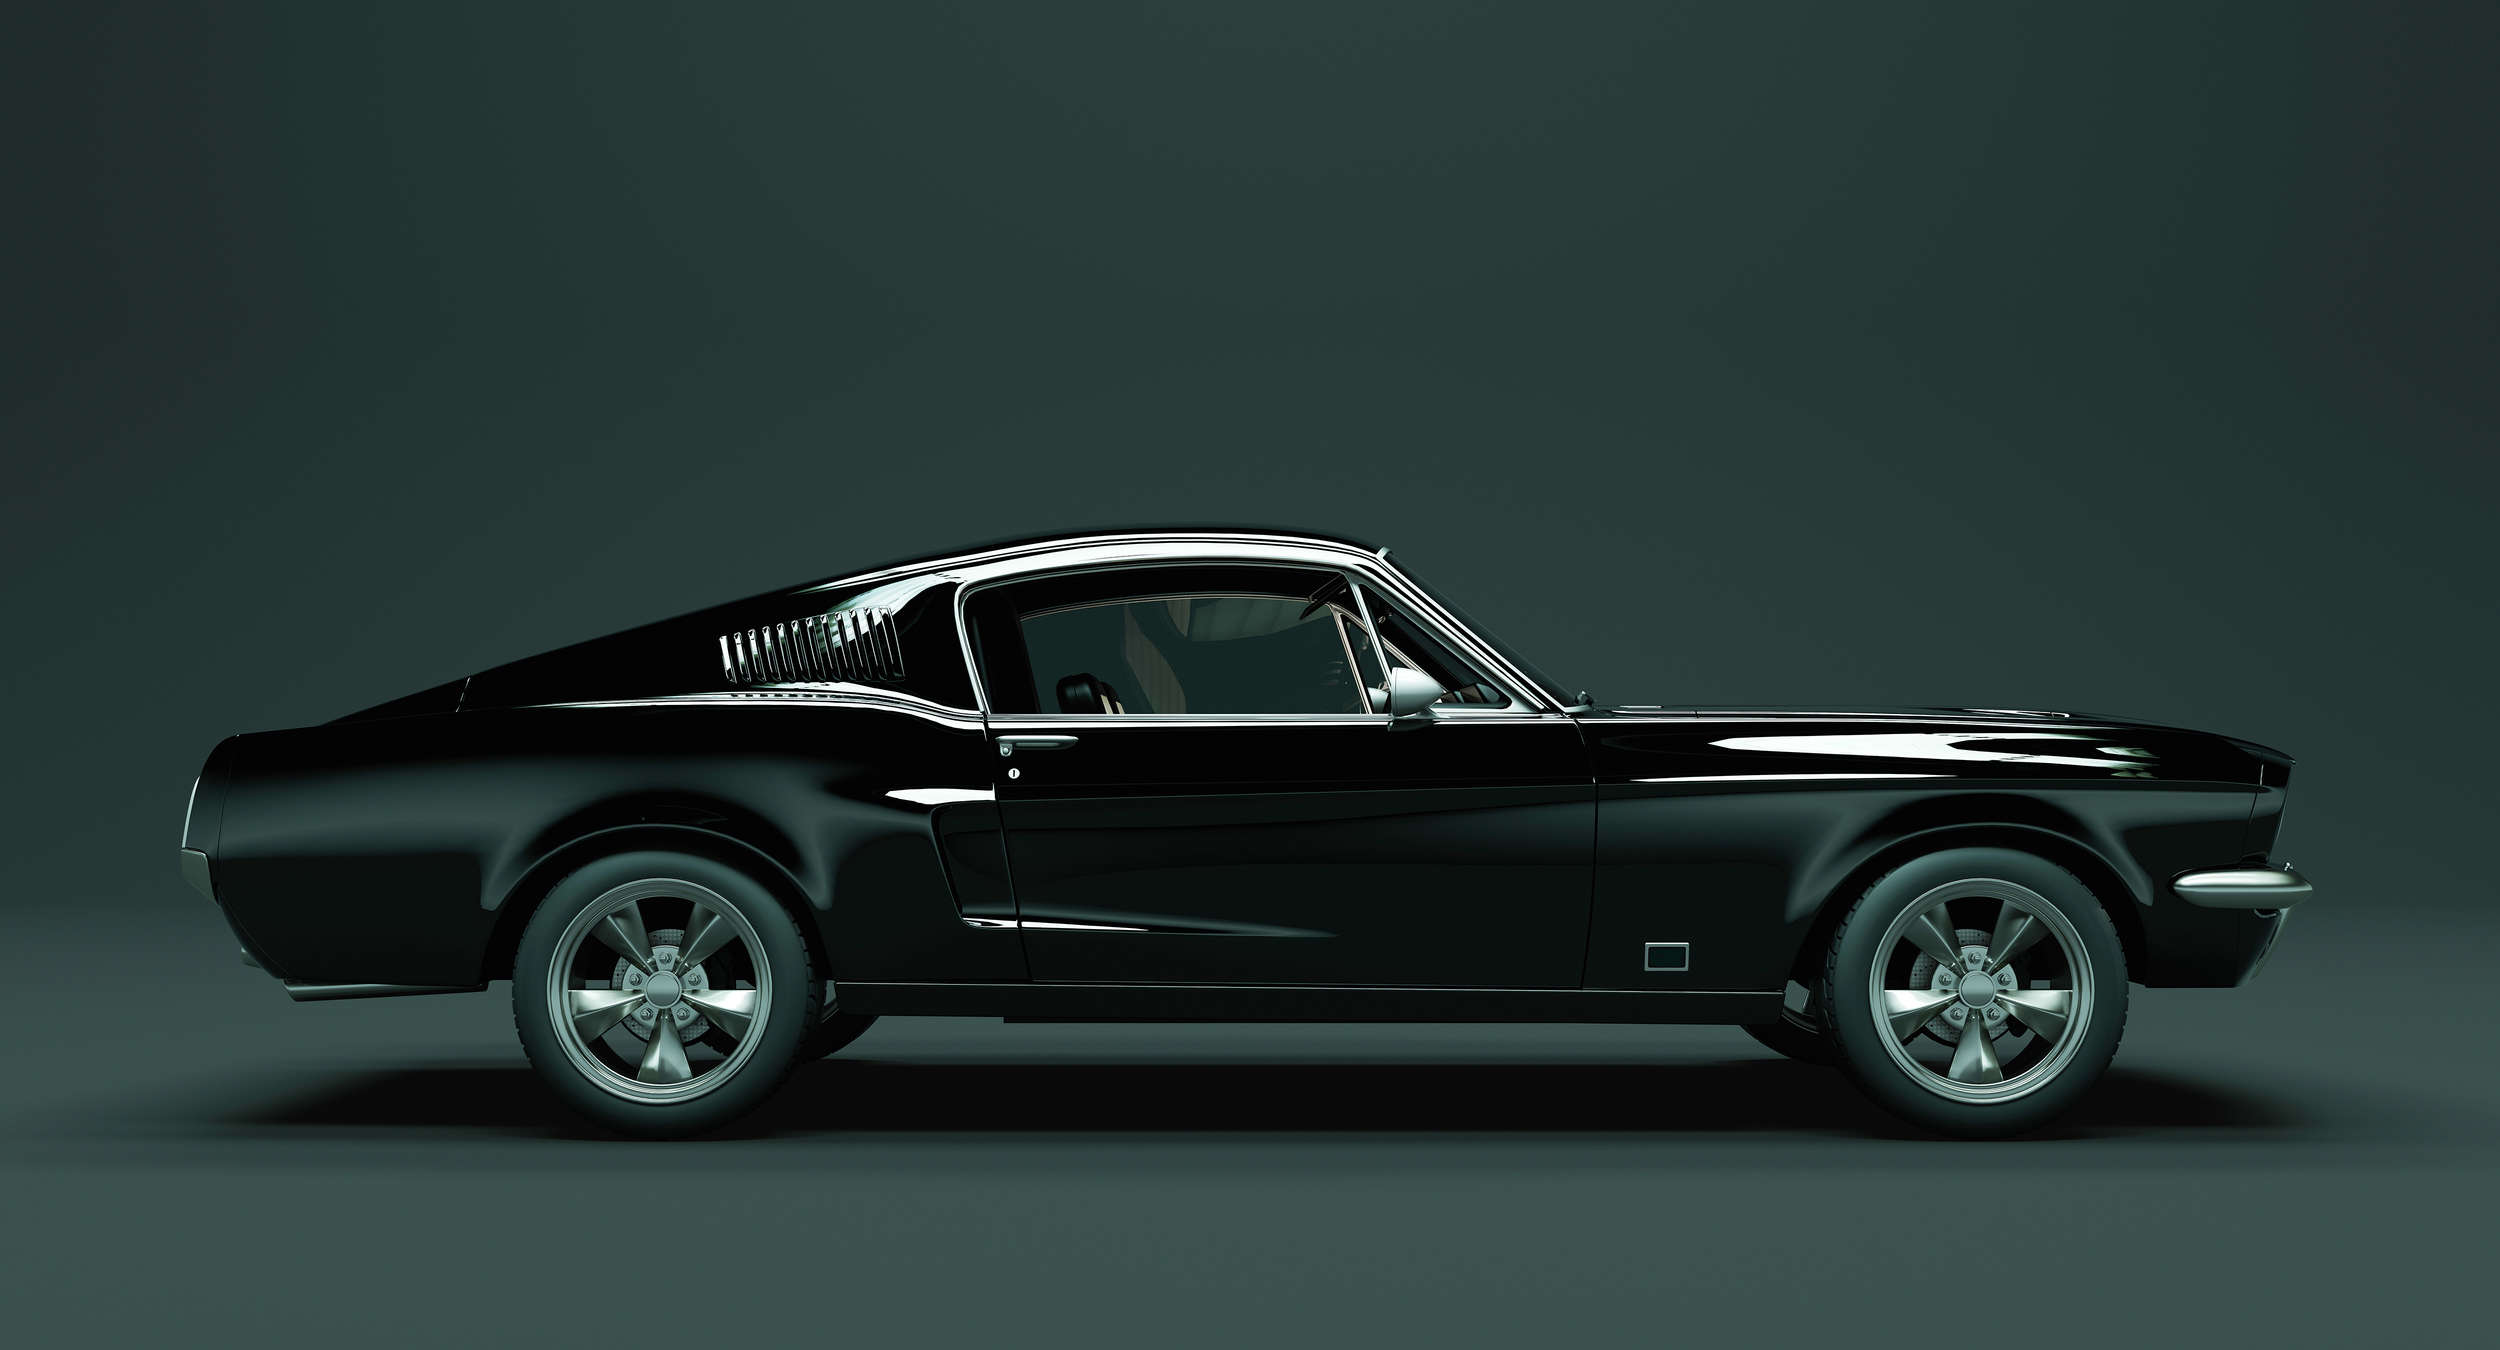             Mustang 1 - Fototapete, Seitenansicht Mustang, Vintage – Blau, Schwarz | Mattes Glattvlies
        